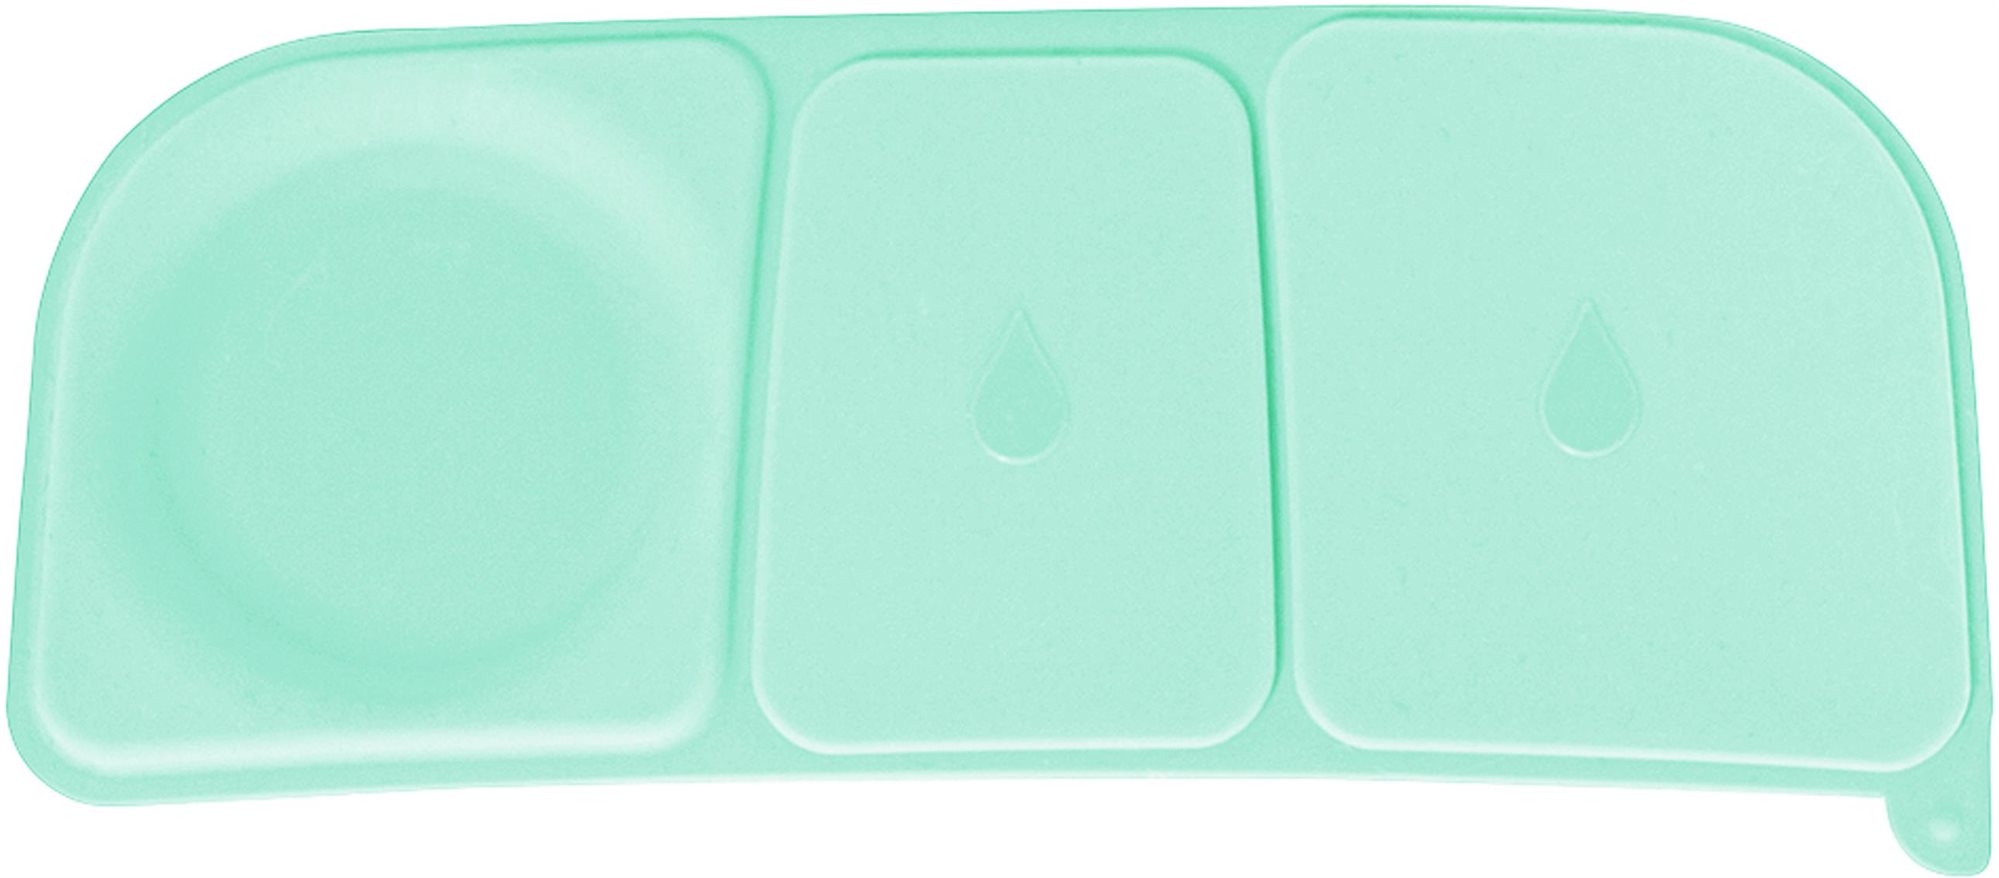 B.Box Tartalék szilikon tömítés uzsonnás dobozhoz, nagy Emerald Forest/Lilac Pop